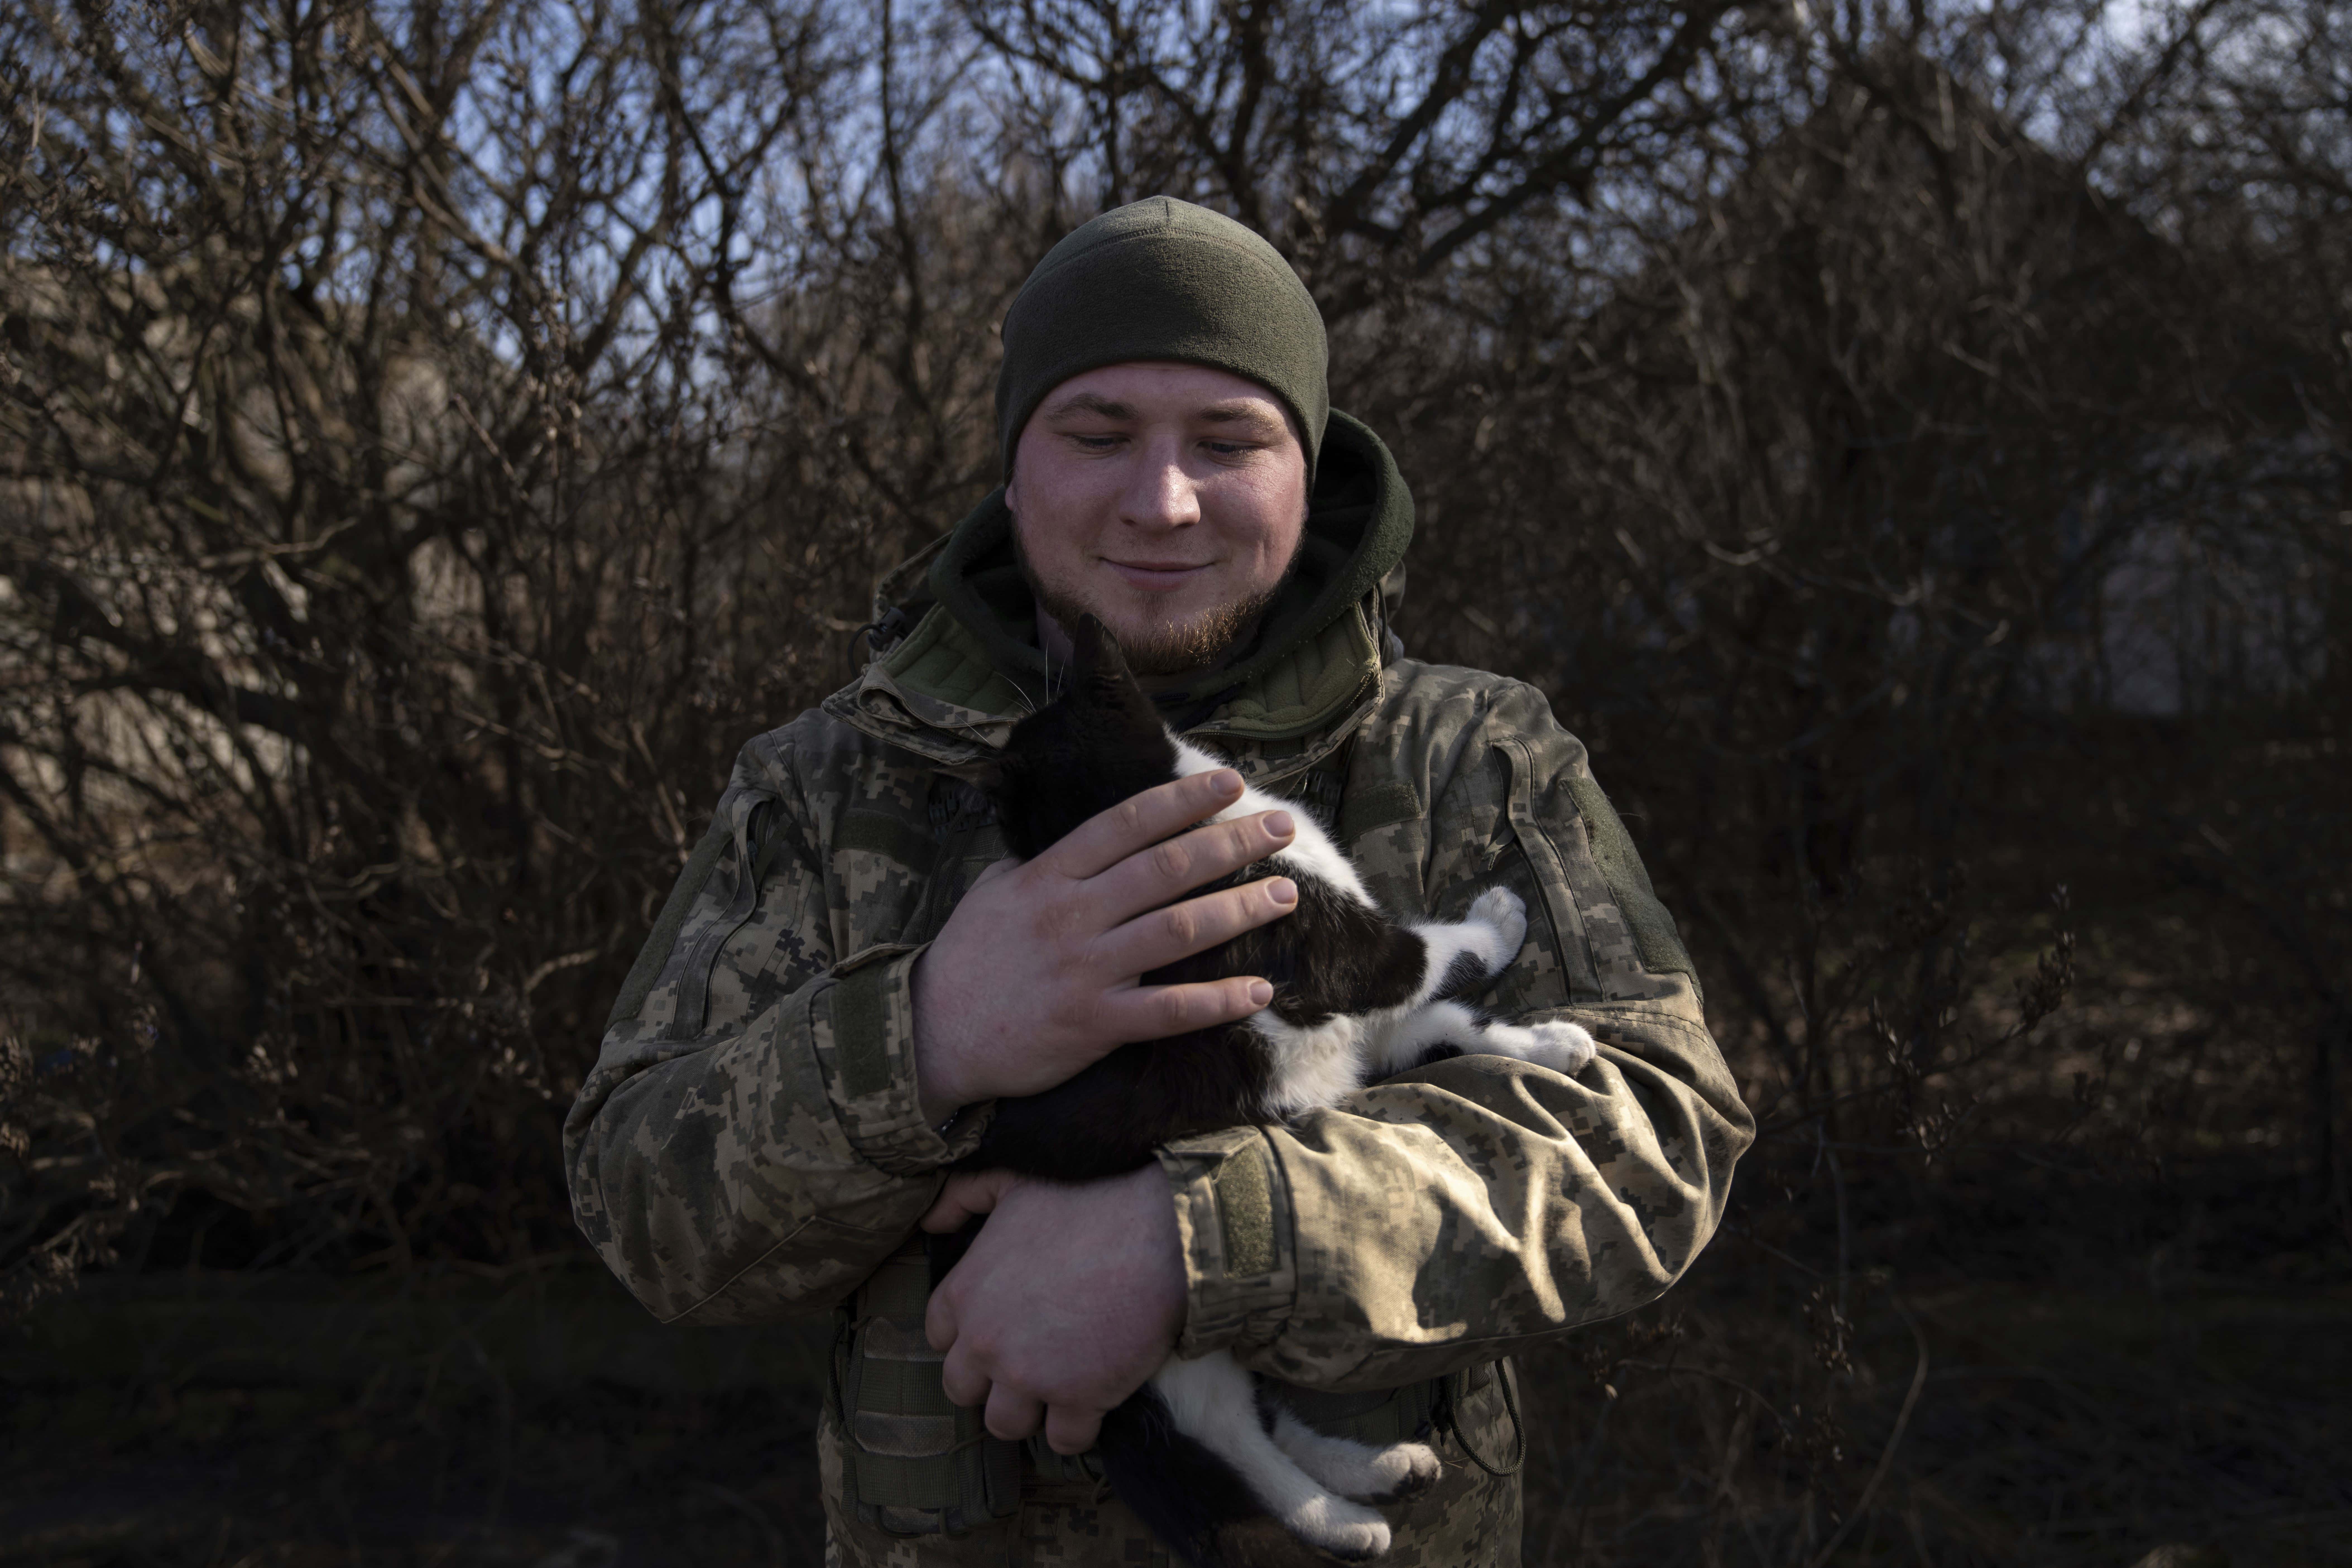 Andrii, de 25 años, un comandante ucraniano de la tripulación Grad, acaricia a un gato mientras espera órdenes del centro de comando en la línea del frente en la región de Donetsk, Ucrania, el viernes 23 de febrero.